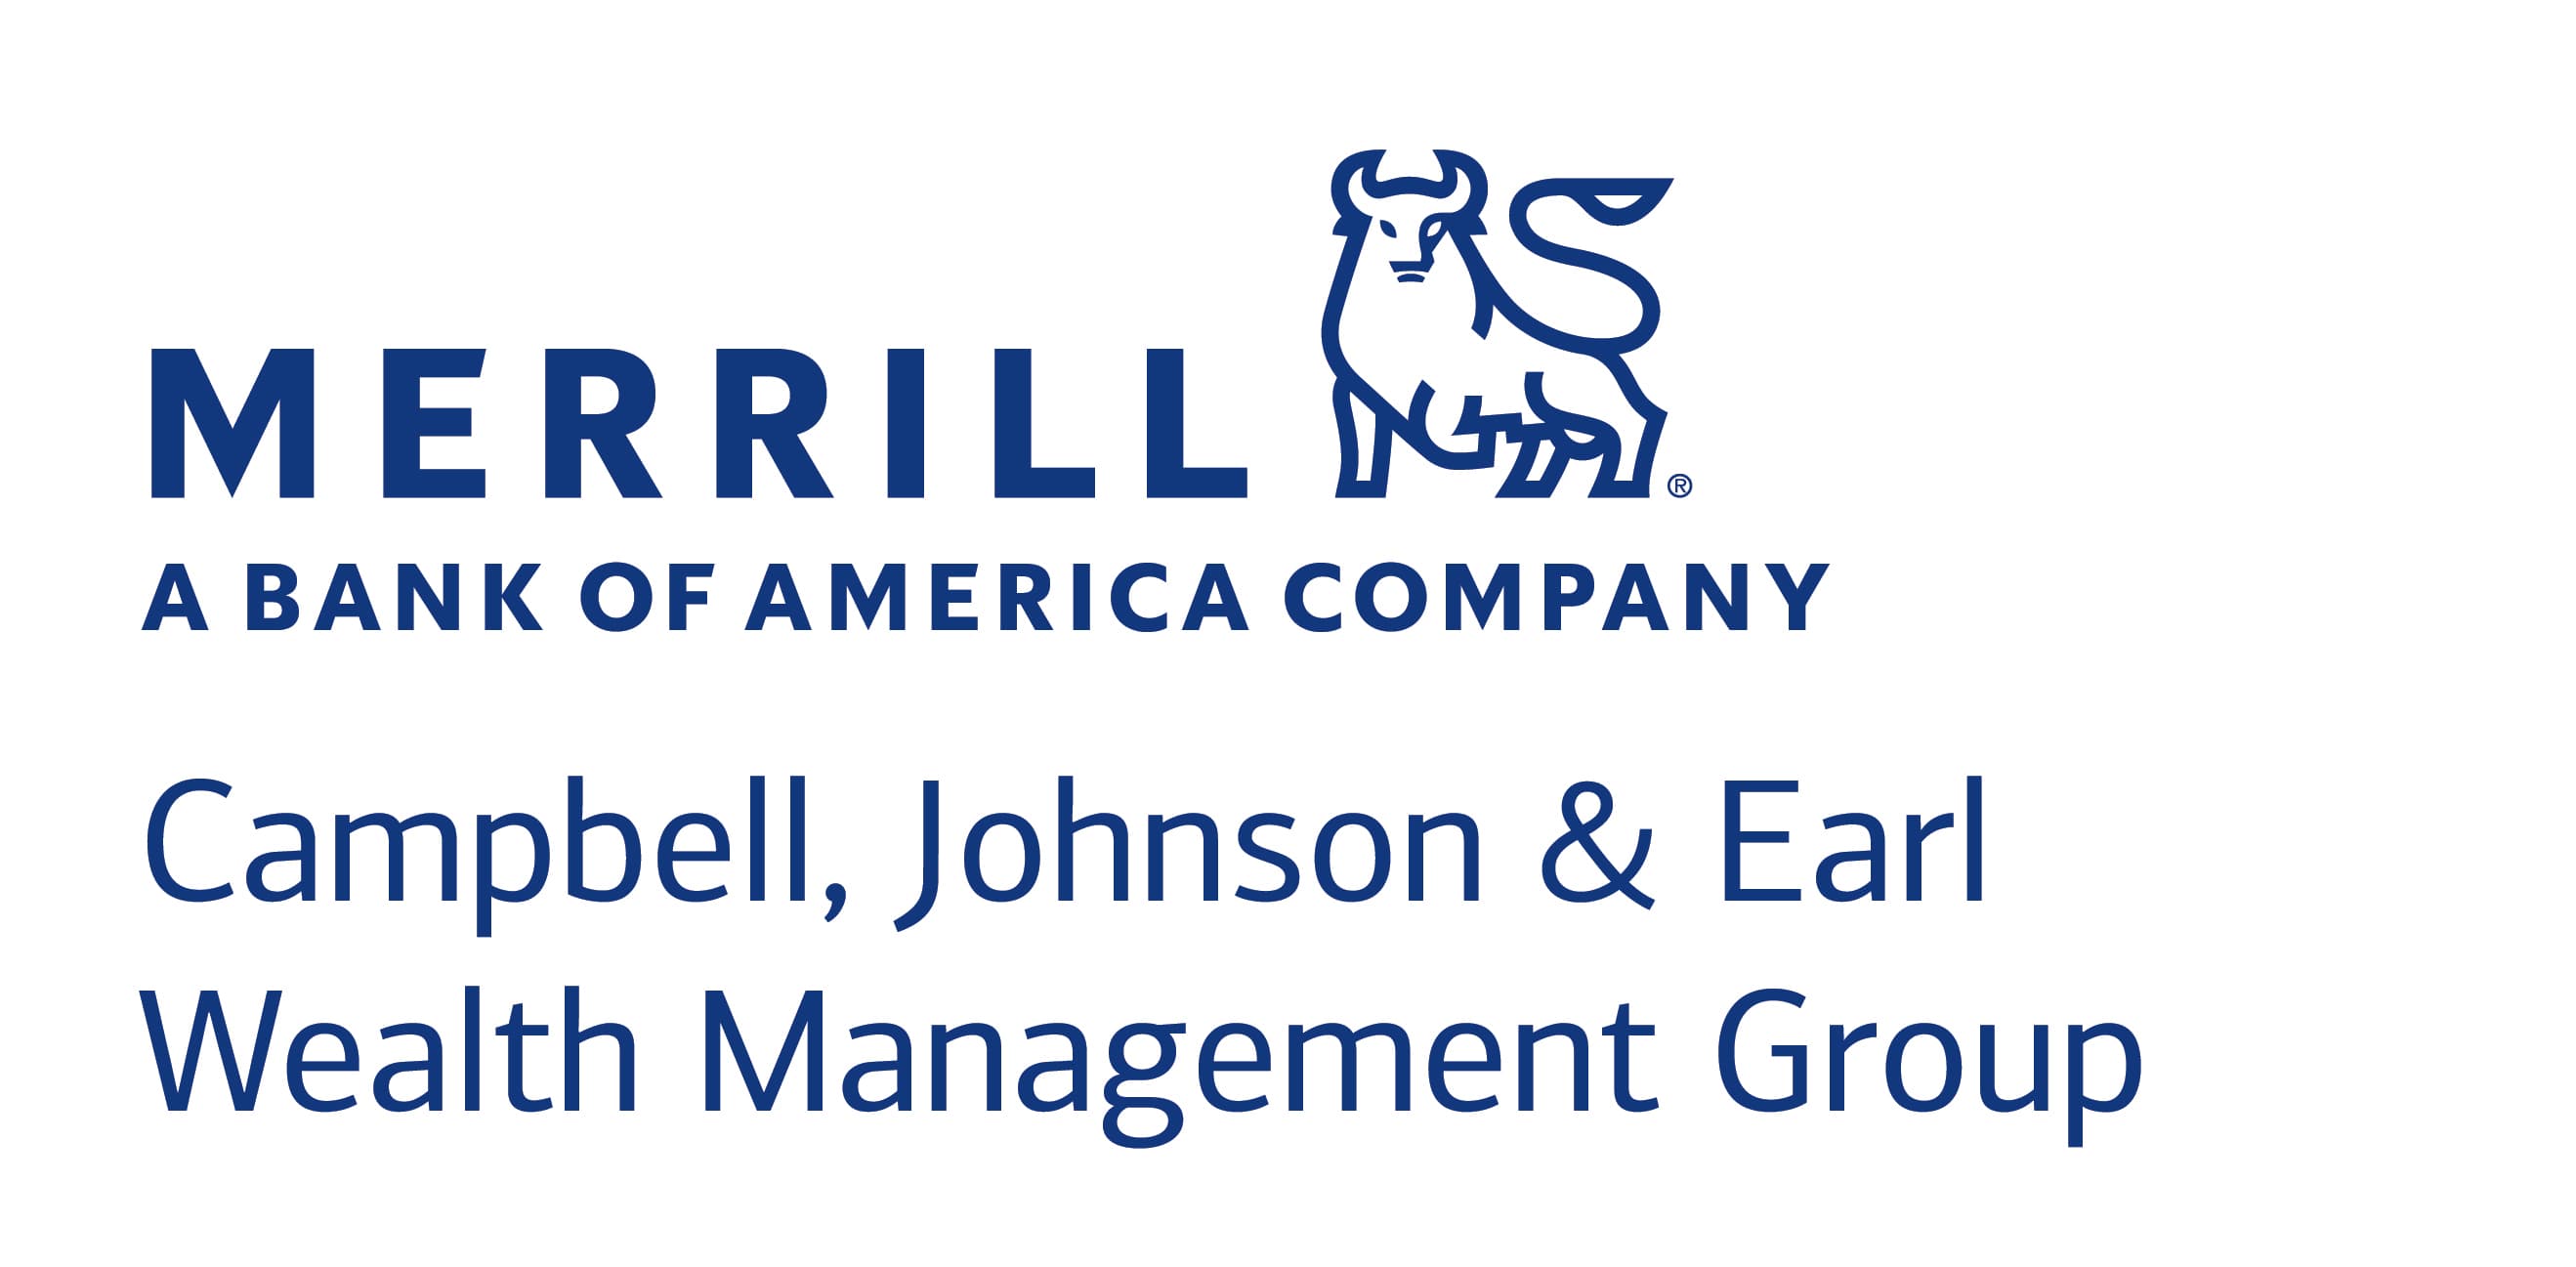 Campbell Johnson Earl Merrill